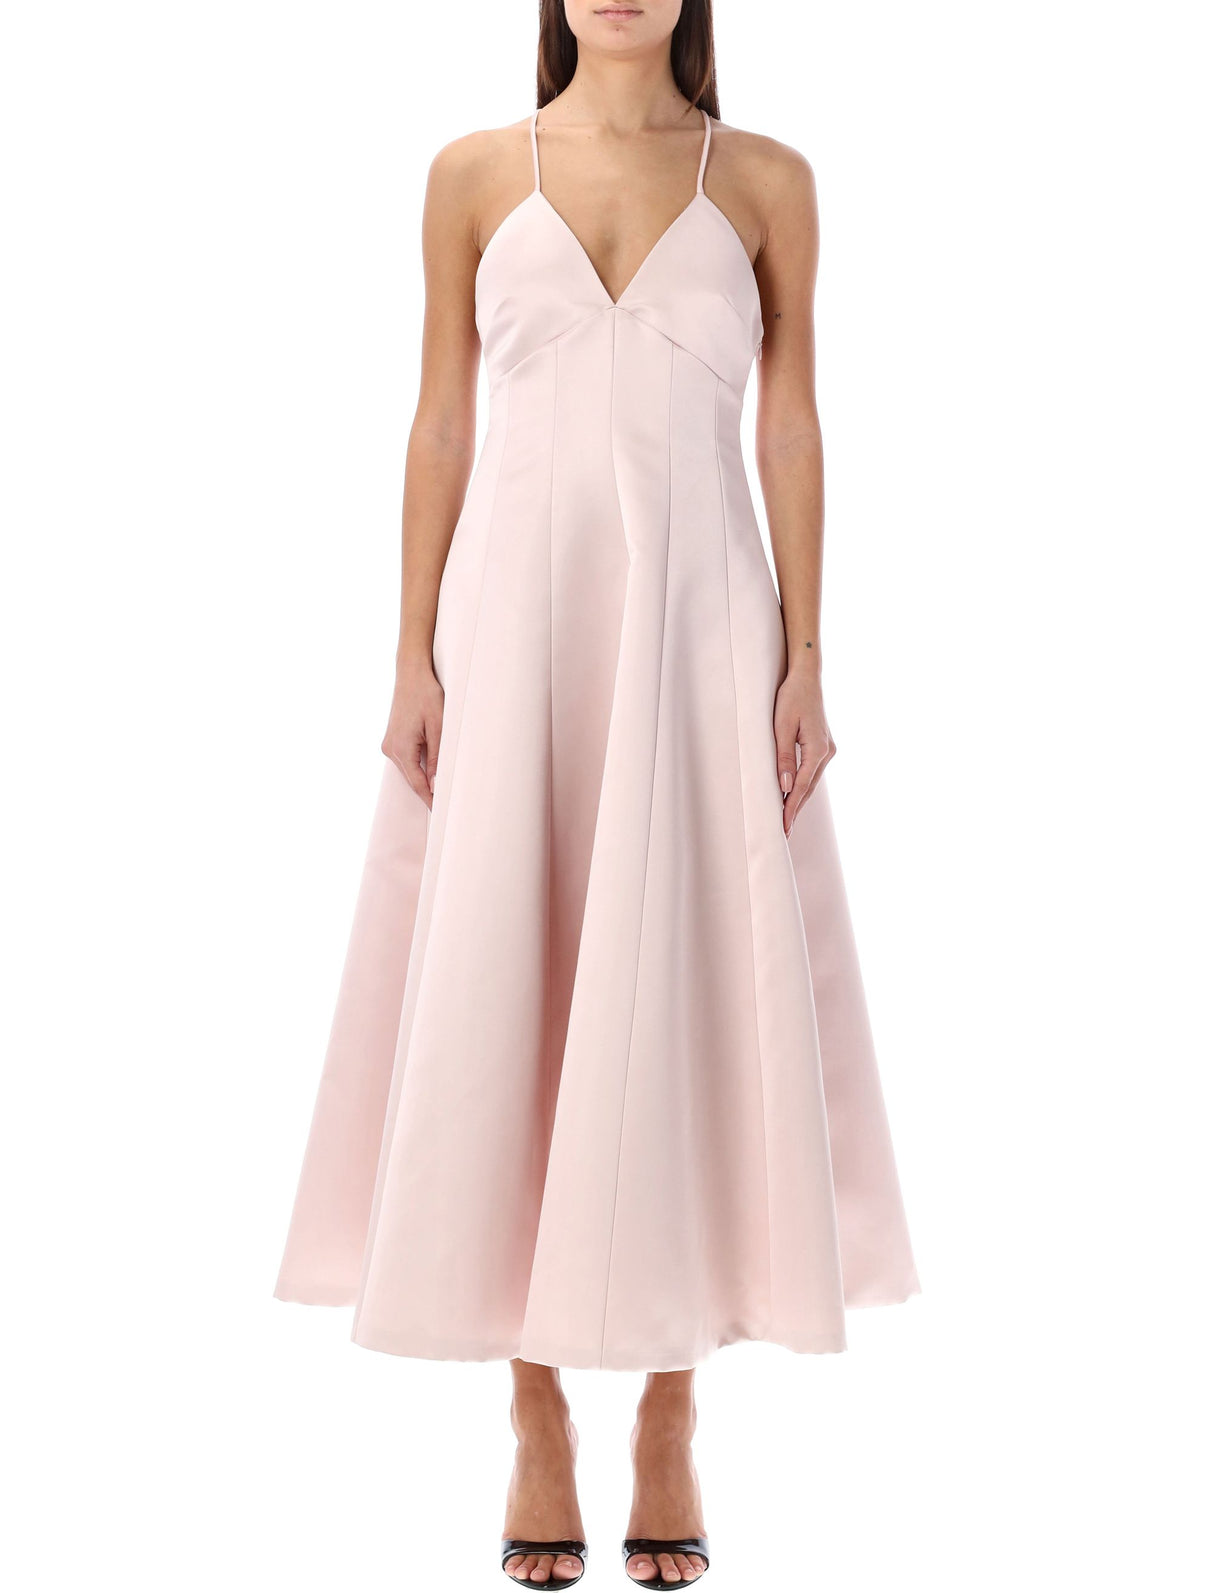 Feminine and Elegant V-Neck Pink Duche Dress for Women